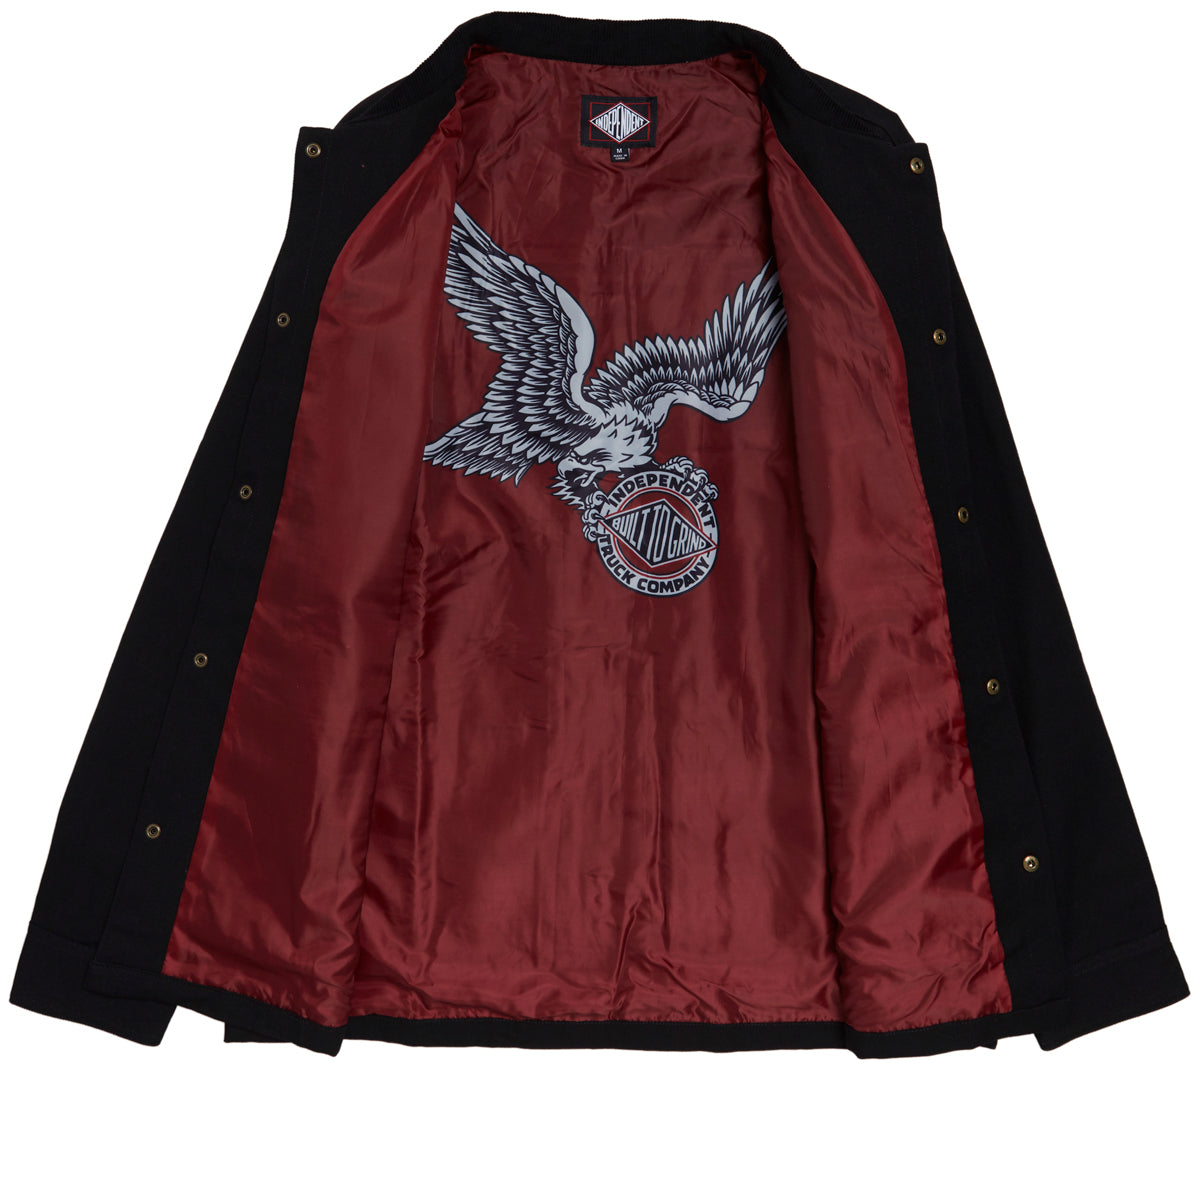 Independent Springer Chore Coat Jacket - Black image 2